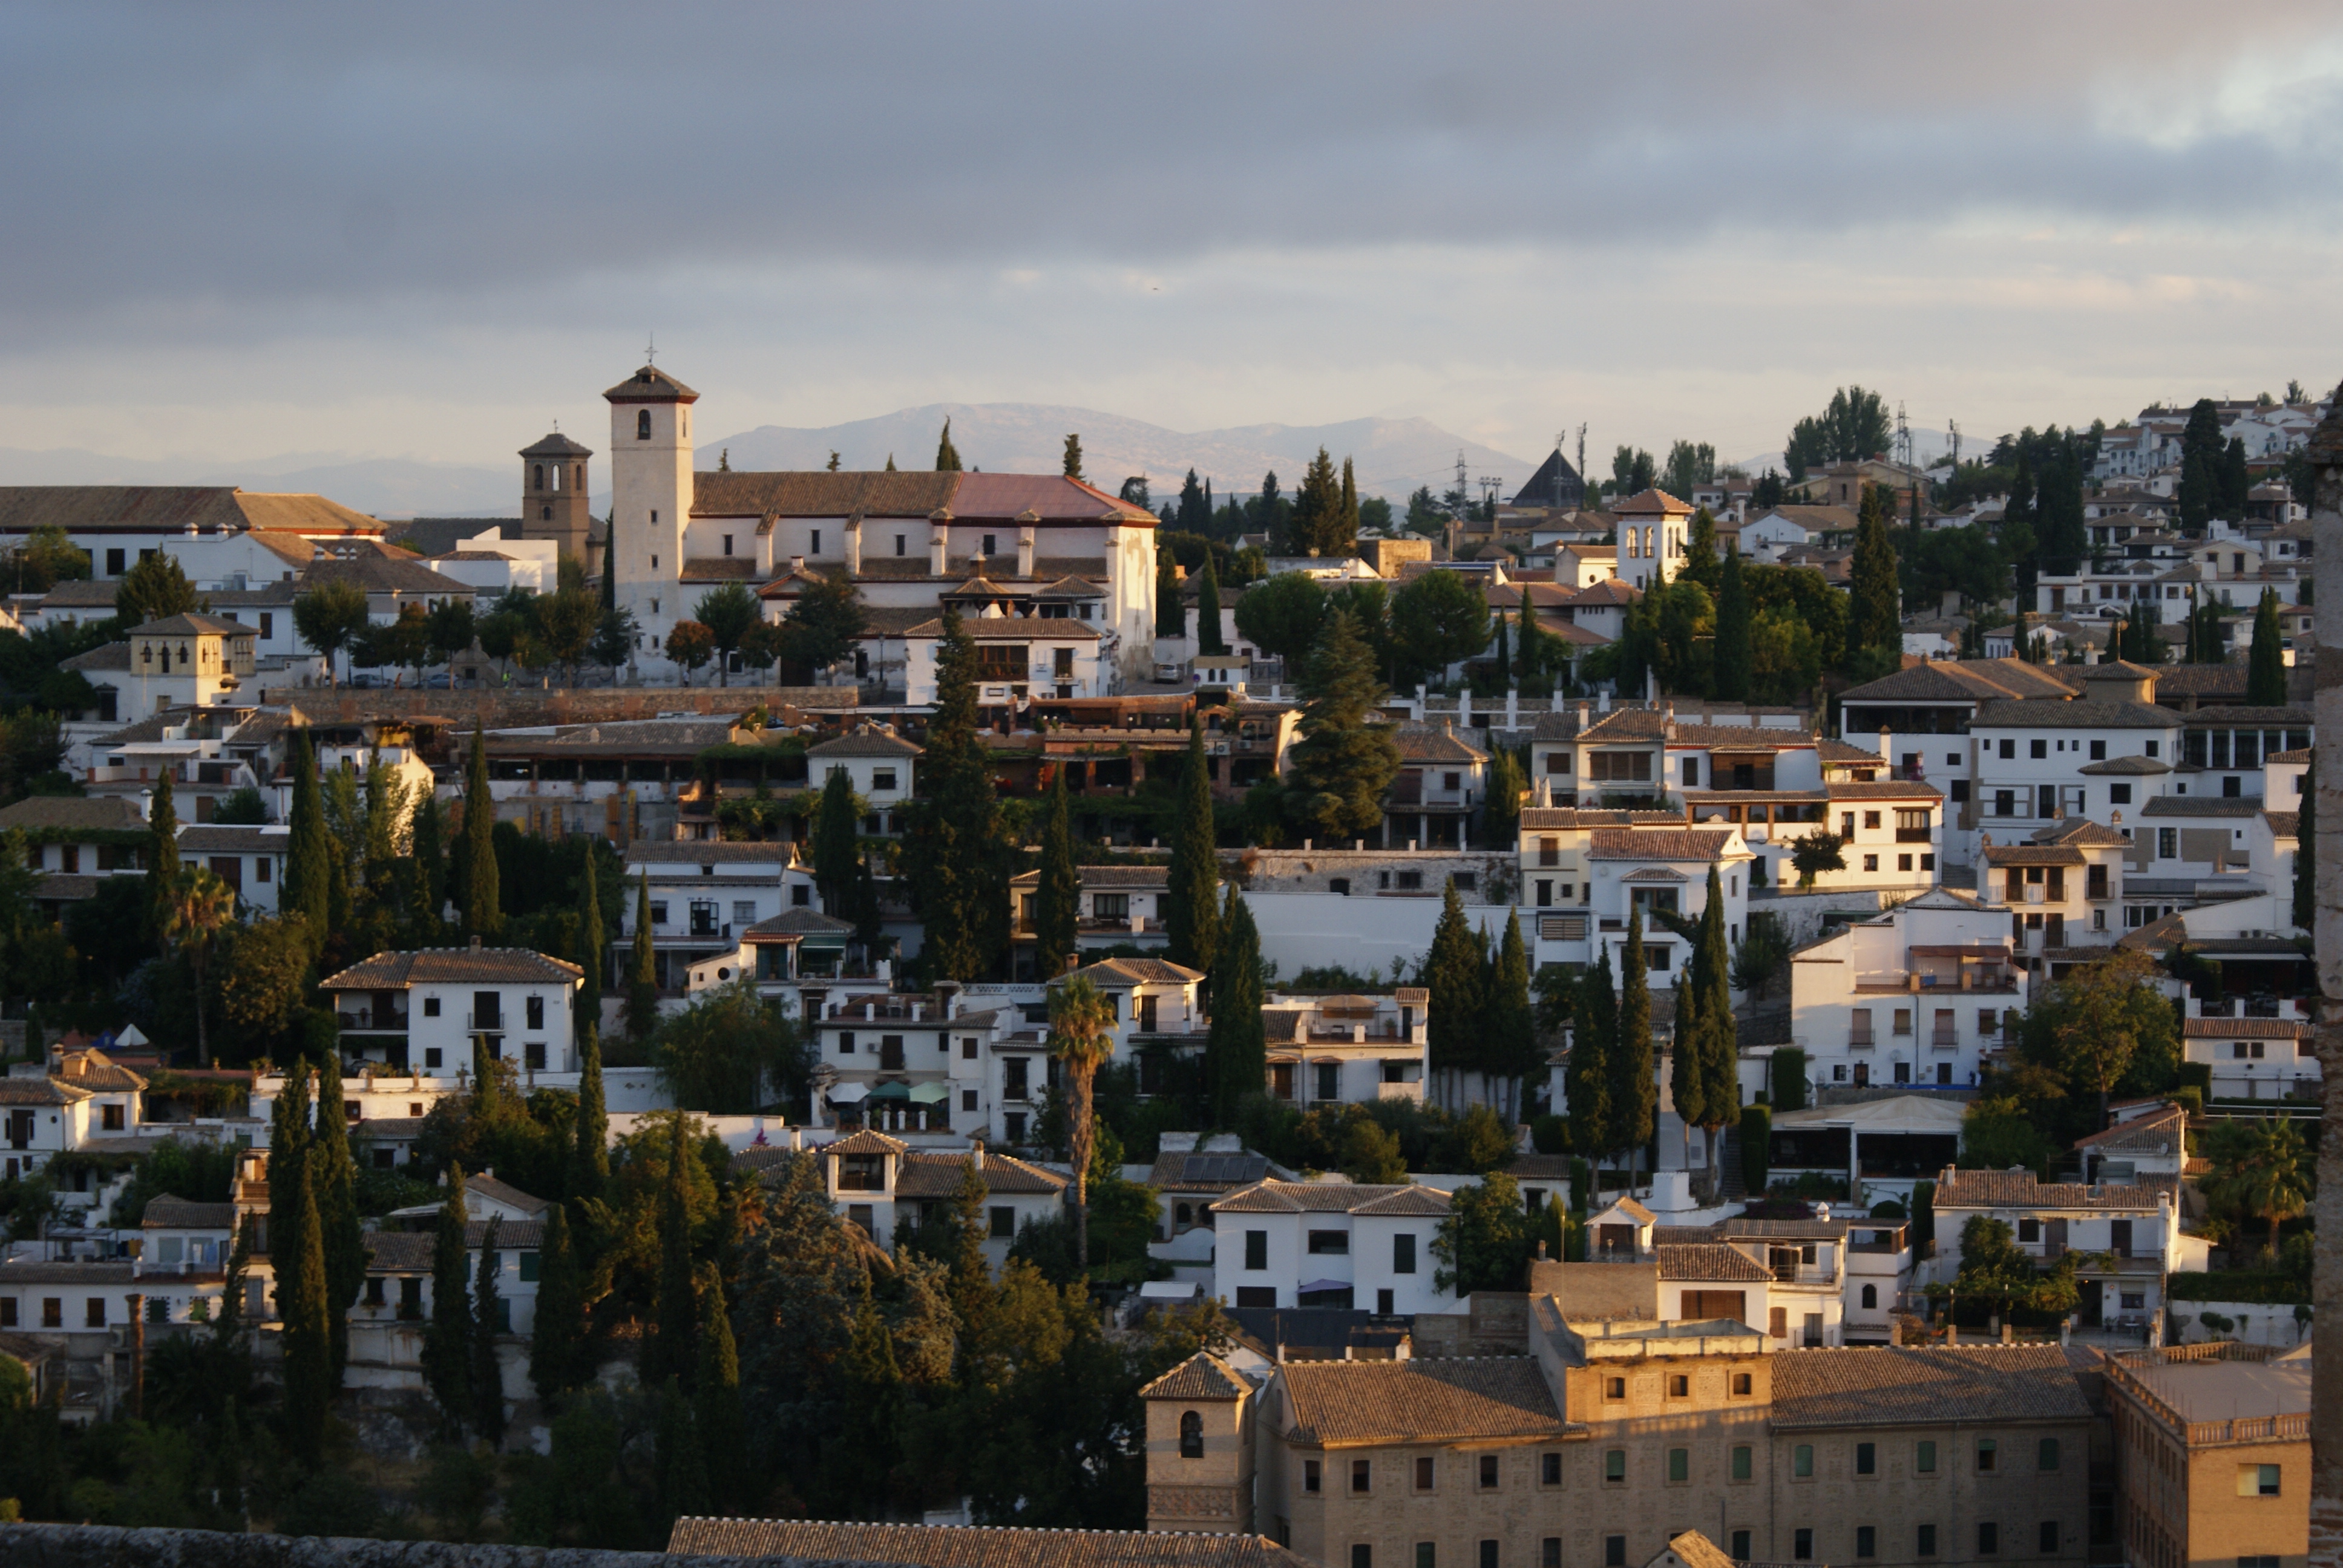 Granada staré město1 - Granada old town1